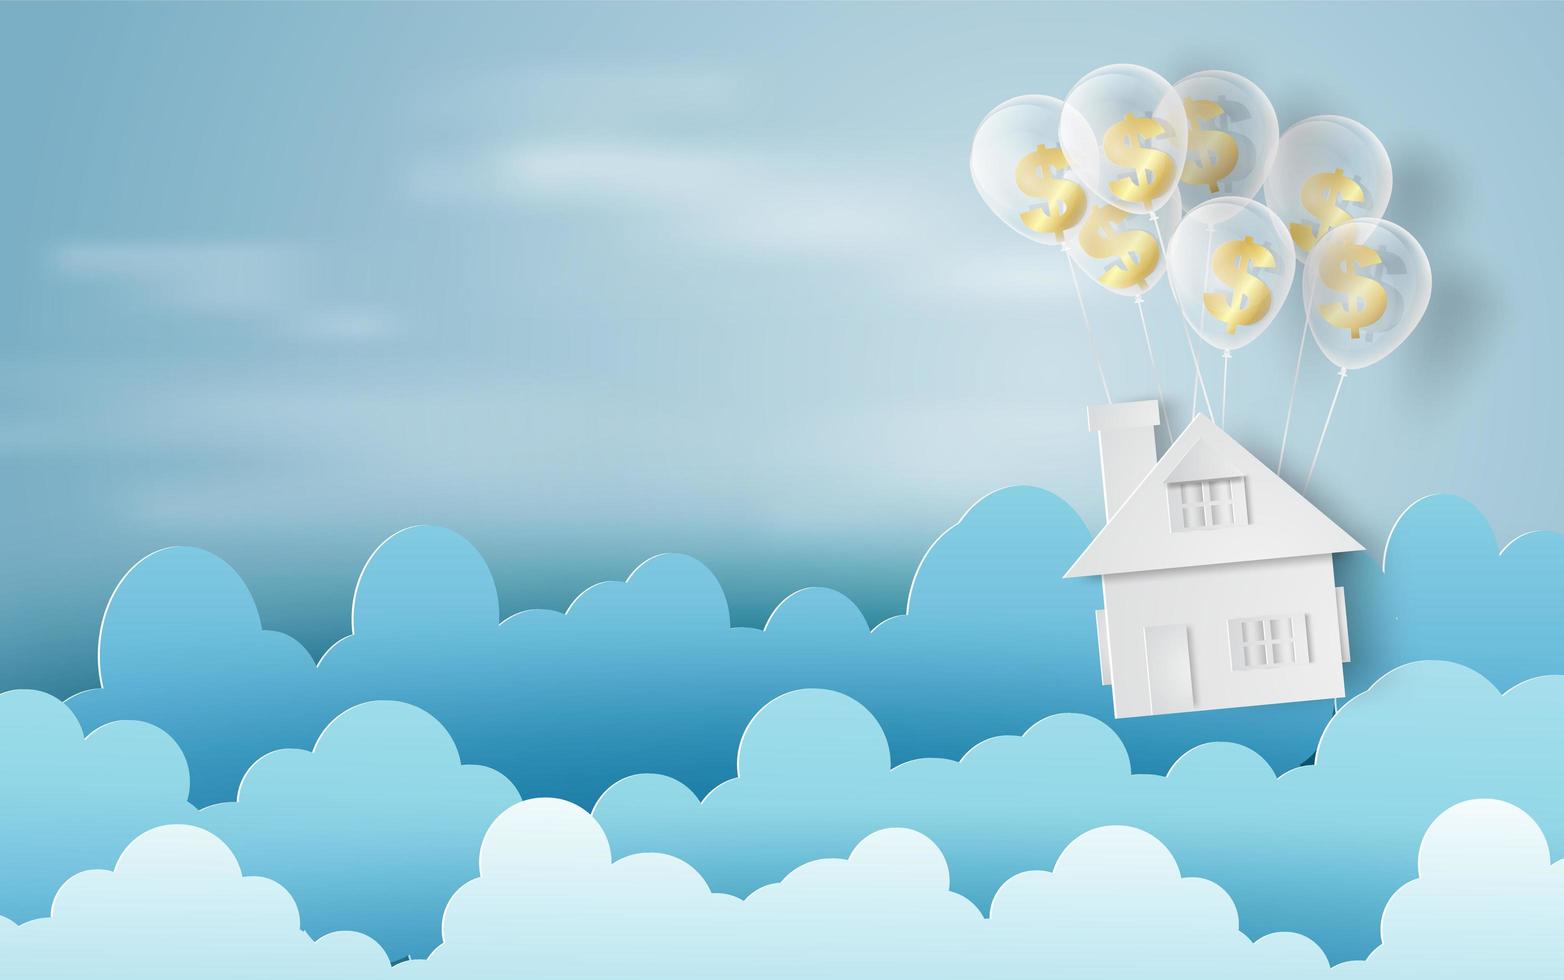 papierkunst van ballonnen als wolken op blauwe hemelbanner met huis vector